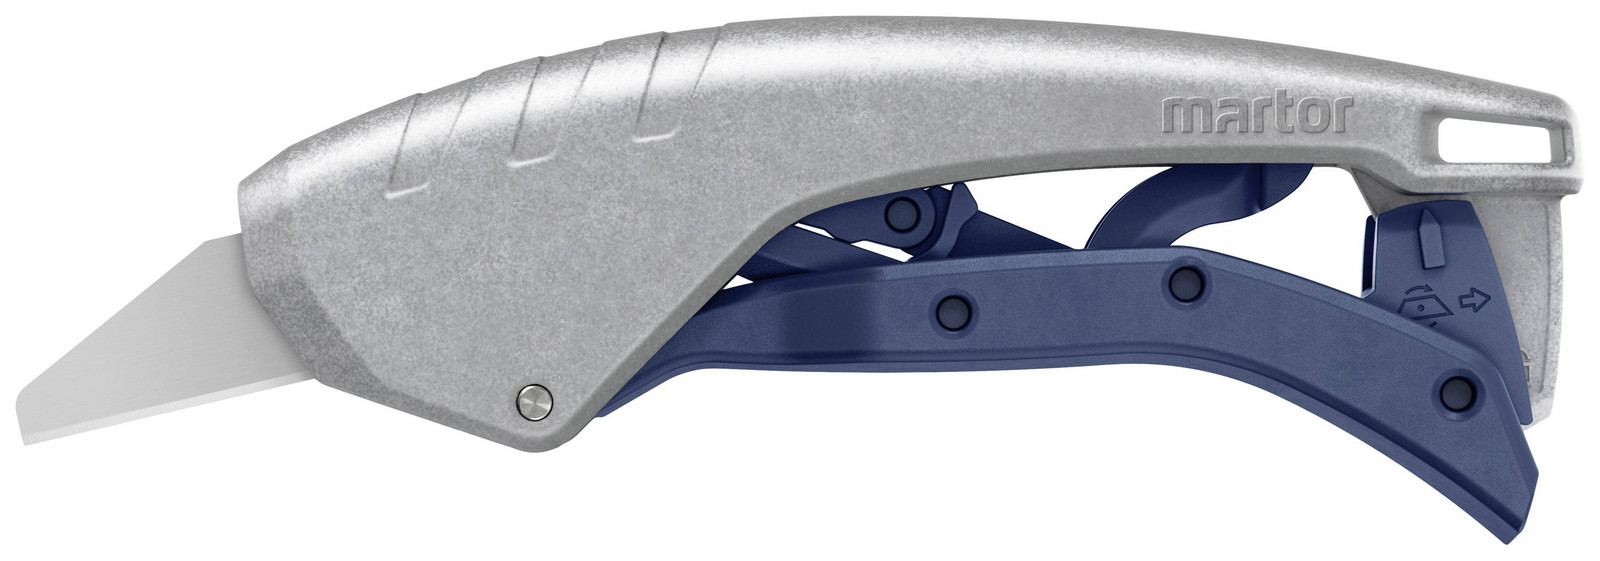 Martor 610001.02 Bezpečnostní nůž Secunorm 610 XDR se speciální velkou čepelí 160060 1 ks